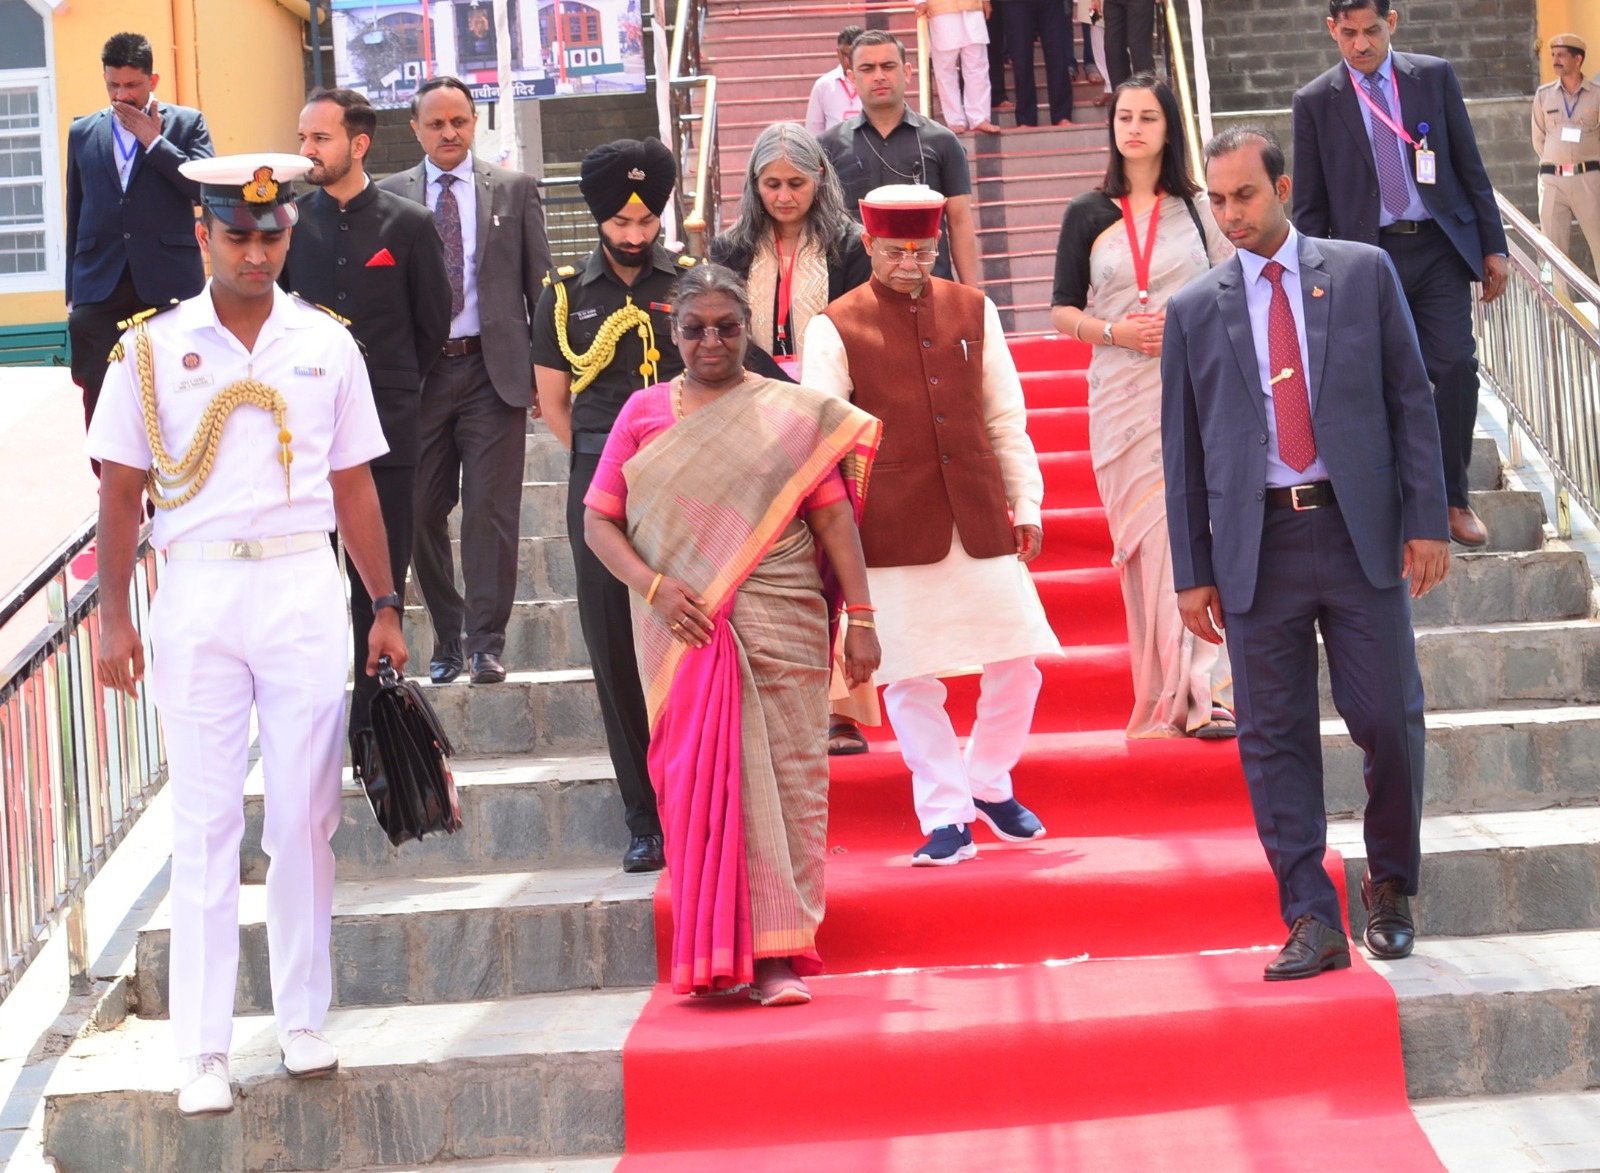 राष्ट्रपति ने किया शिमला के प्रमुख धार्मिक स्थलों का दौरा संकटमोचन और तारादेवी मंदिर जाकर की पूजा अर्चना।